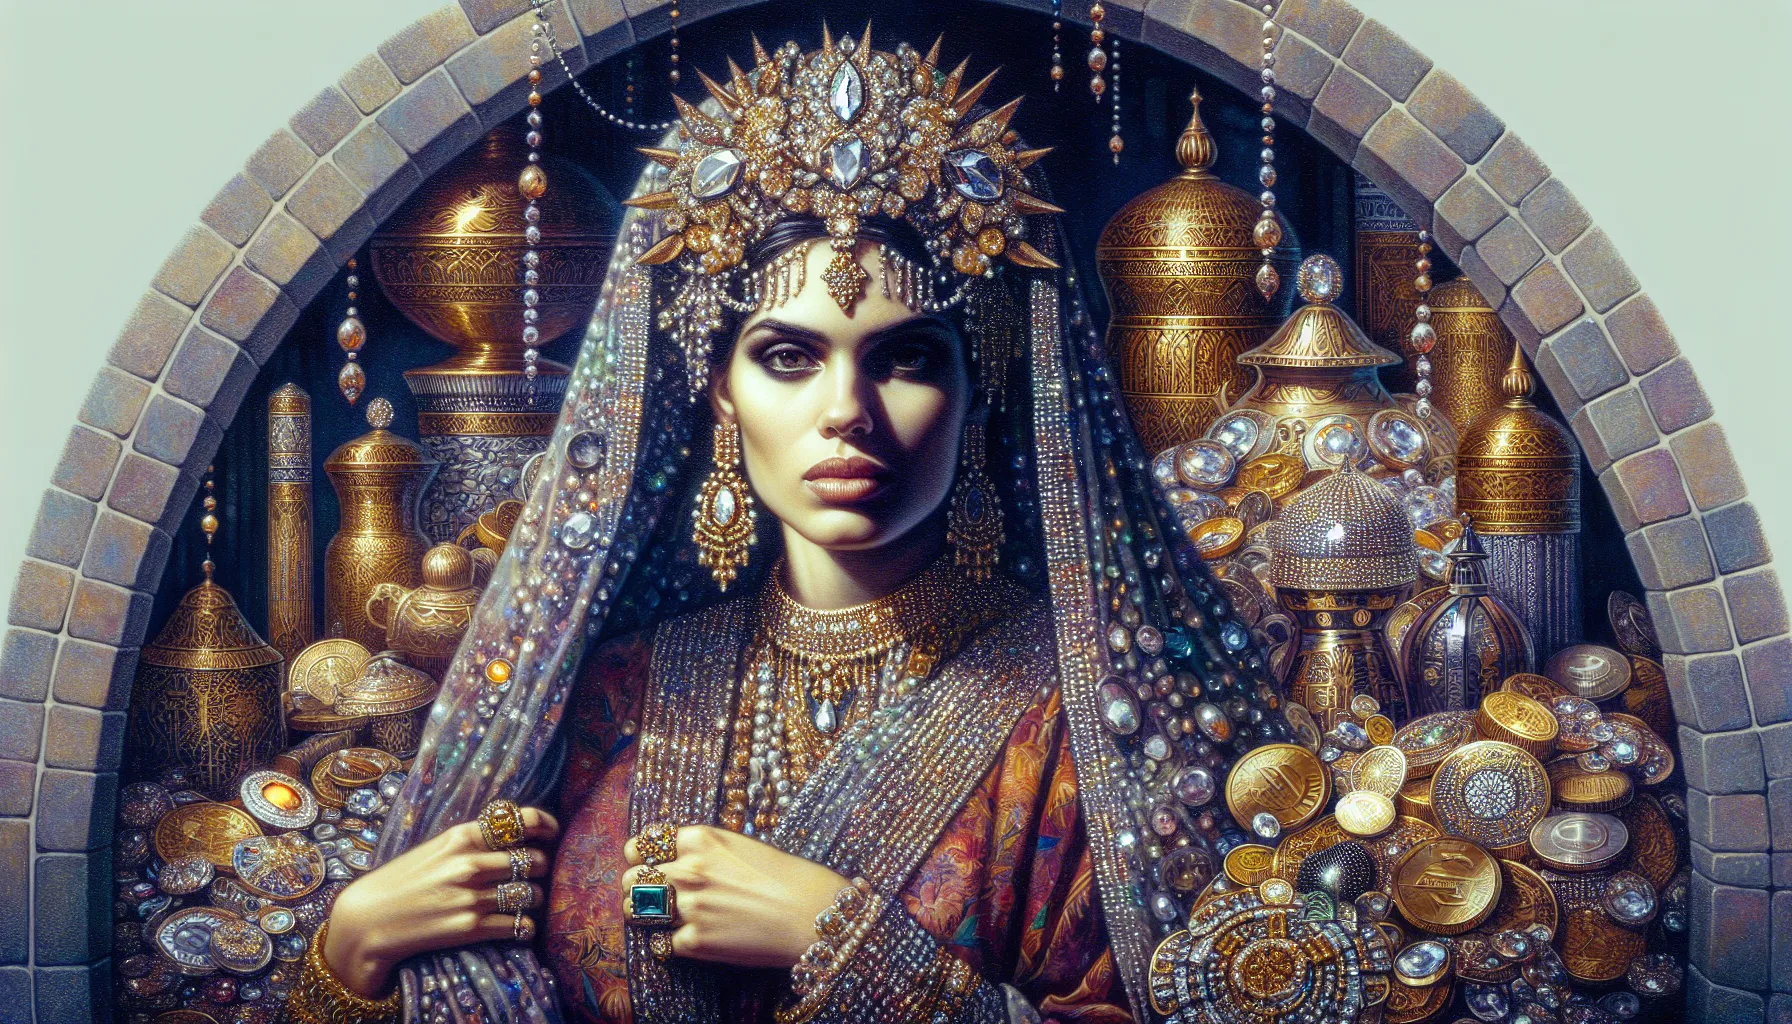 Representación artística de una mujer cubierta de joyas